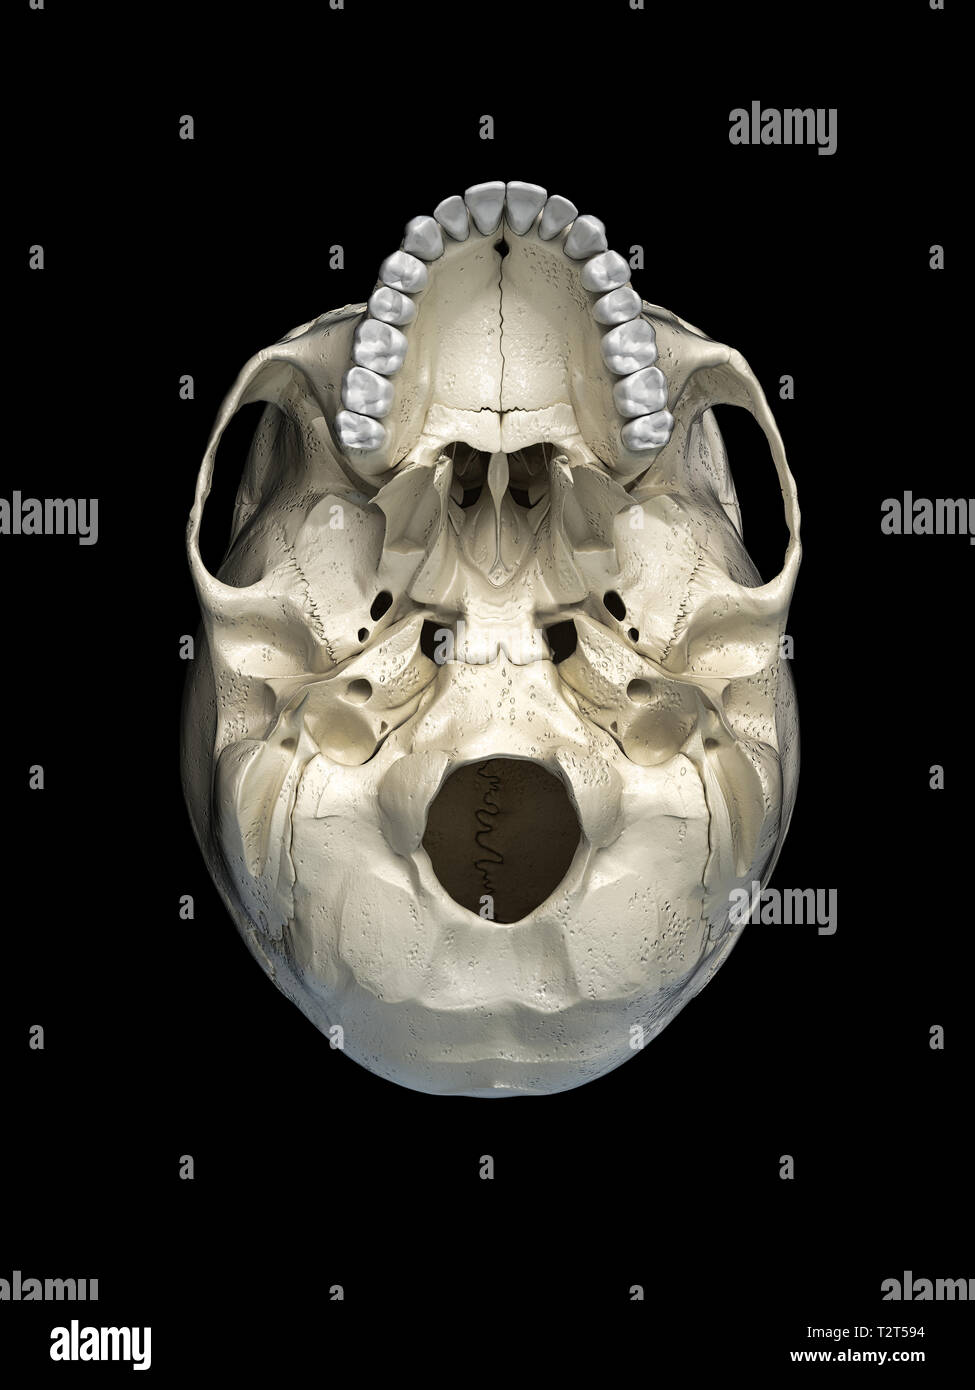 Cranio umano visto dal basso. Su sfondo nero. Foto Stock